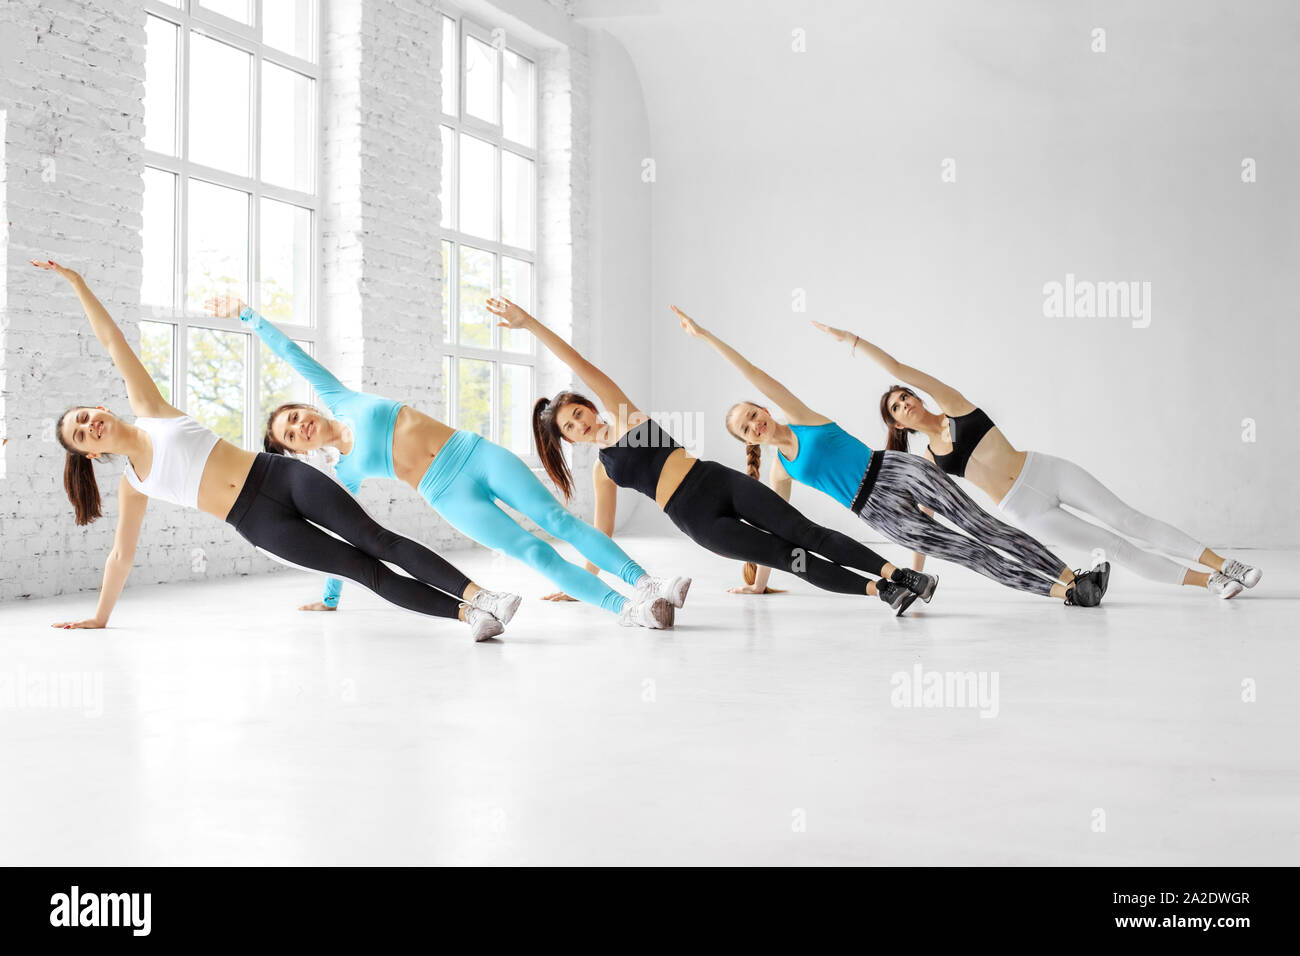 Les jeunes femmes n'aérobic dans la classe de danse. Le concept de sport, un style de vie sain, fitness, stretching et danse. Banque D'Images